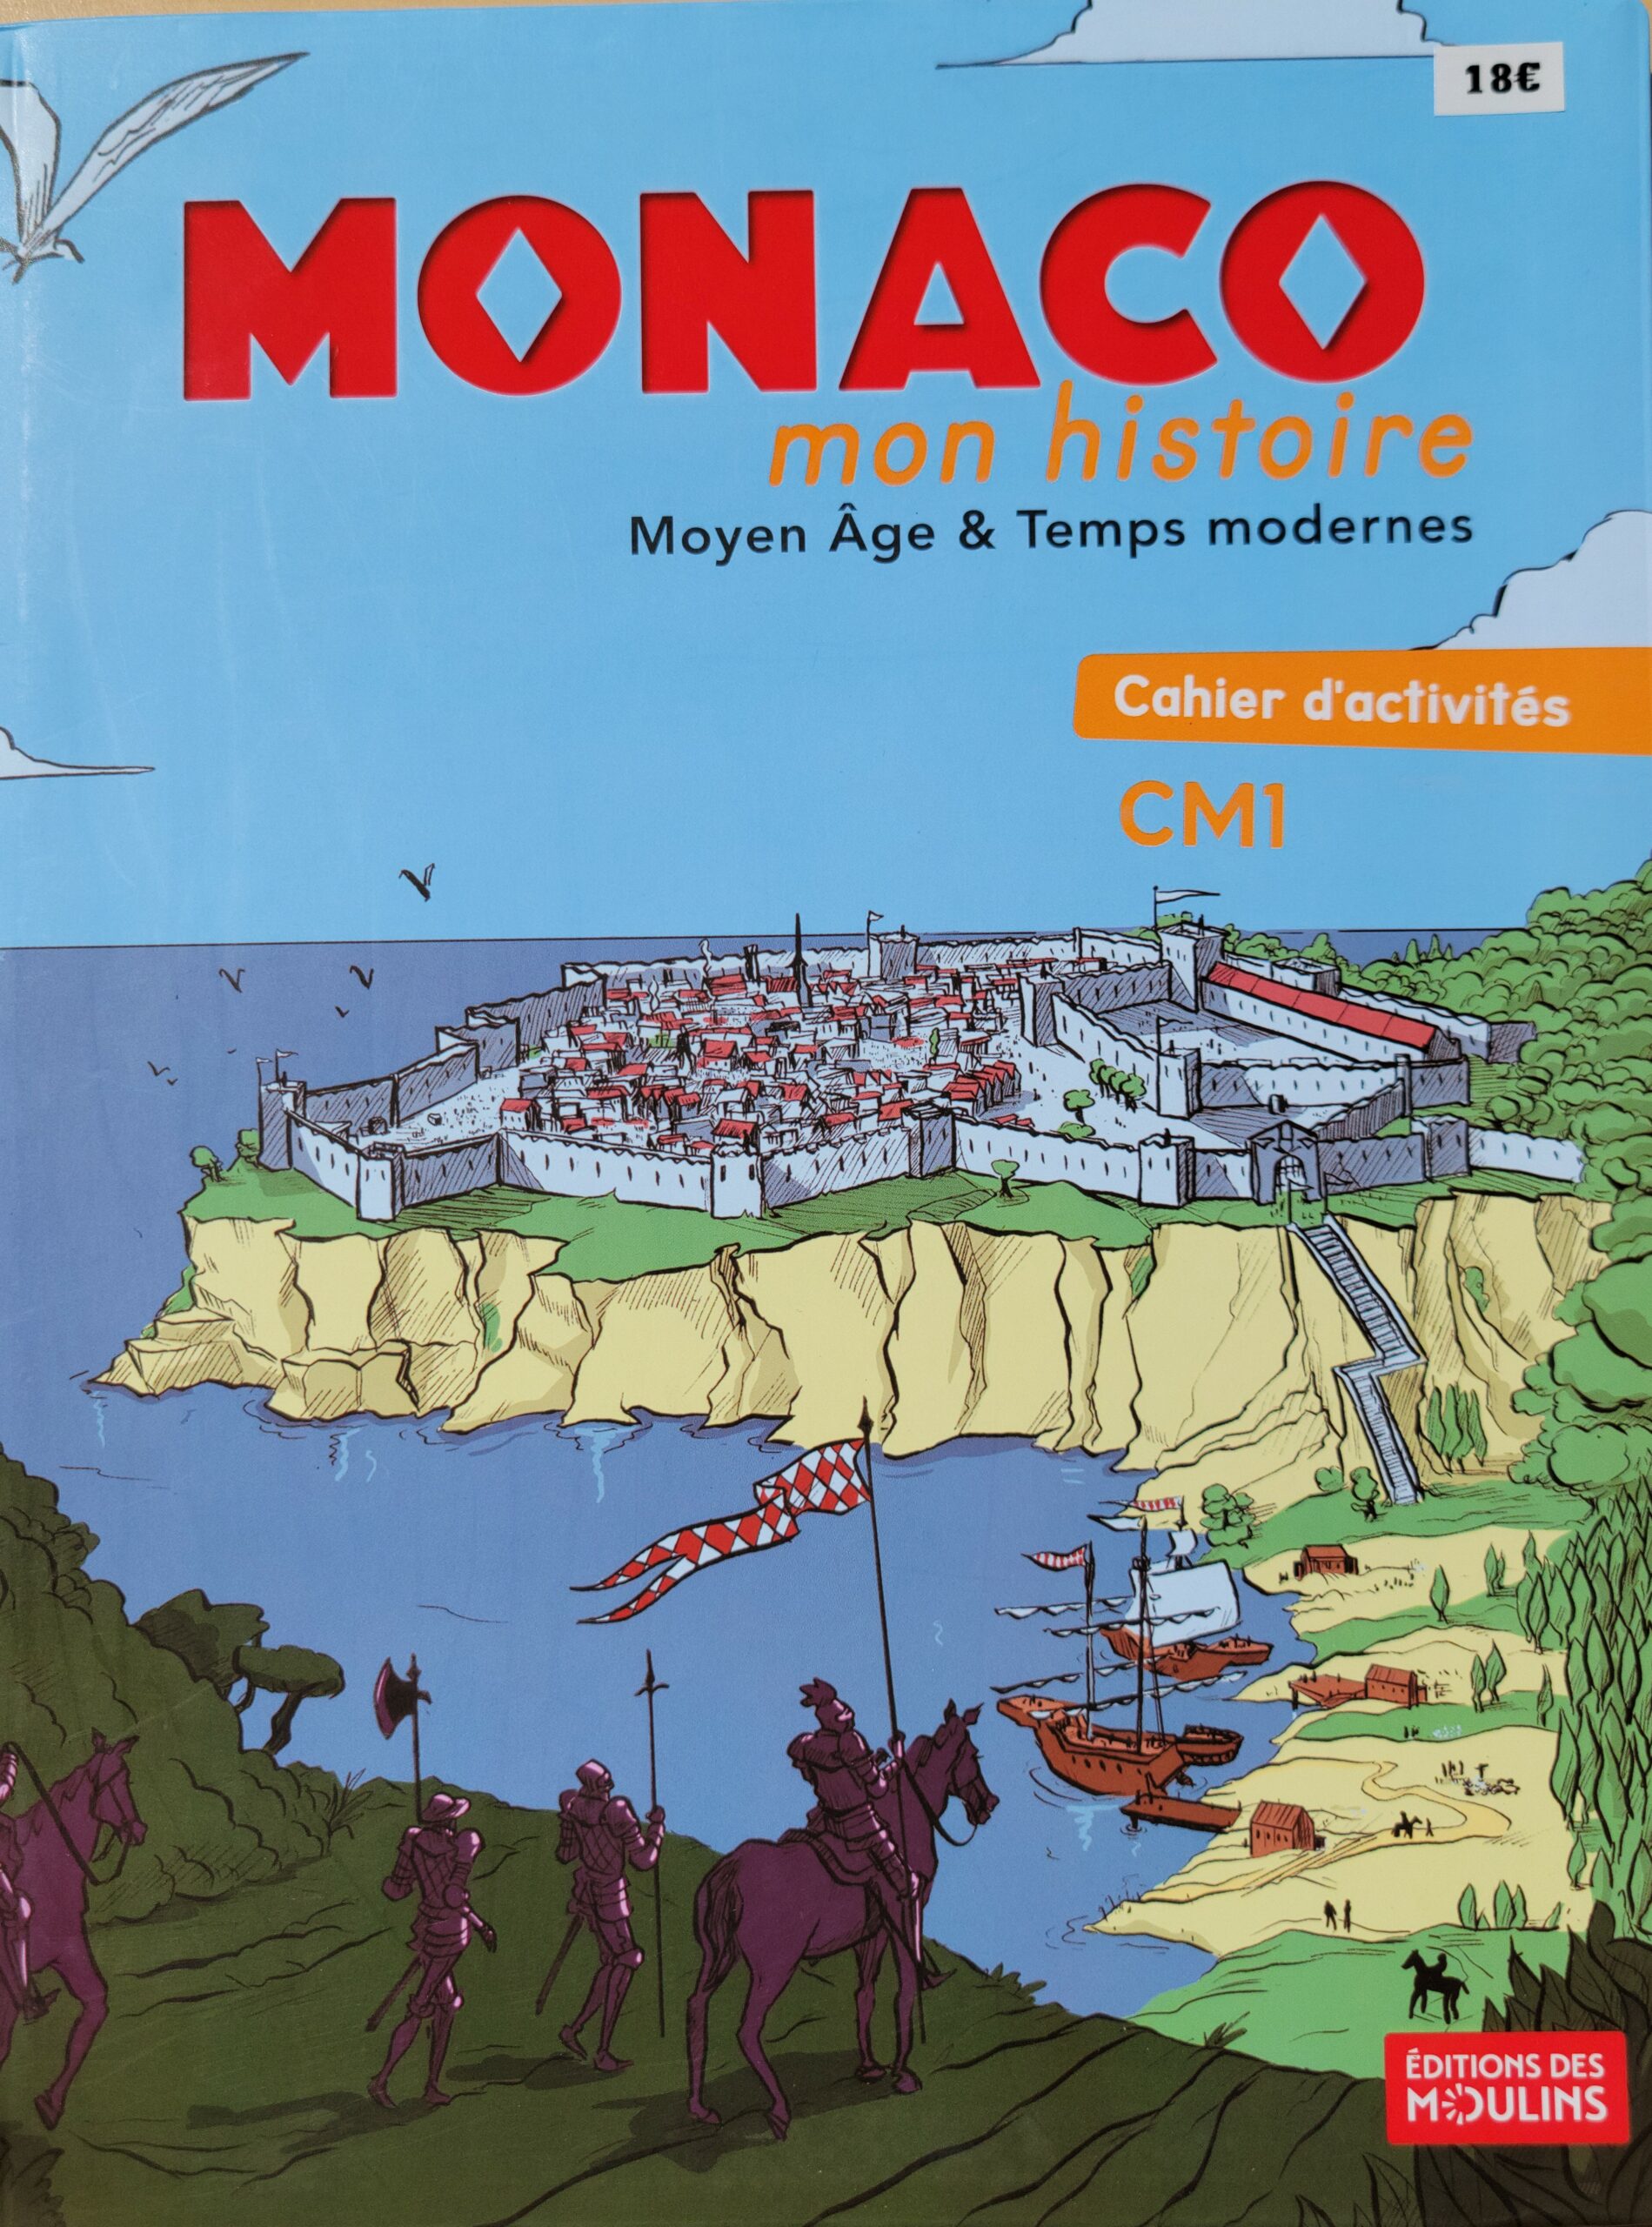 Couverture Monaco mon histoire Moyen Âge & Temps modernes cahier d'activités CM1